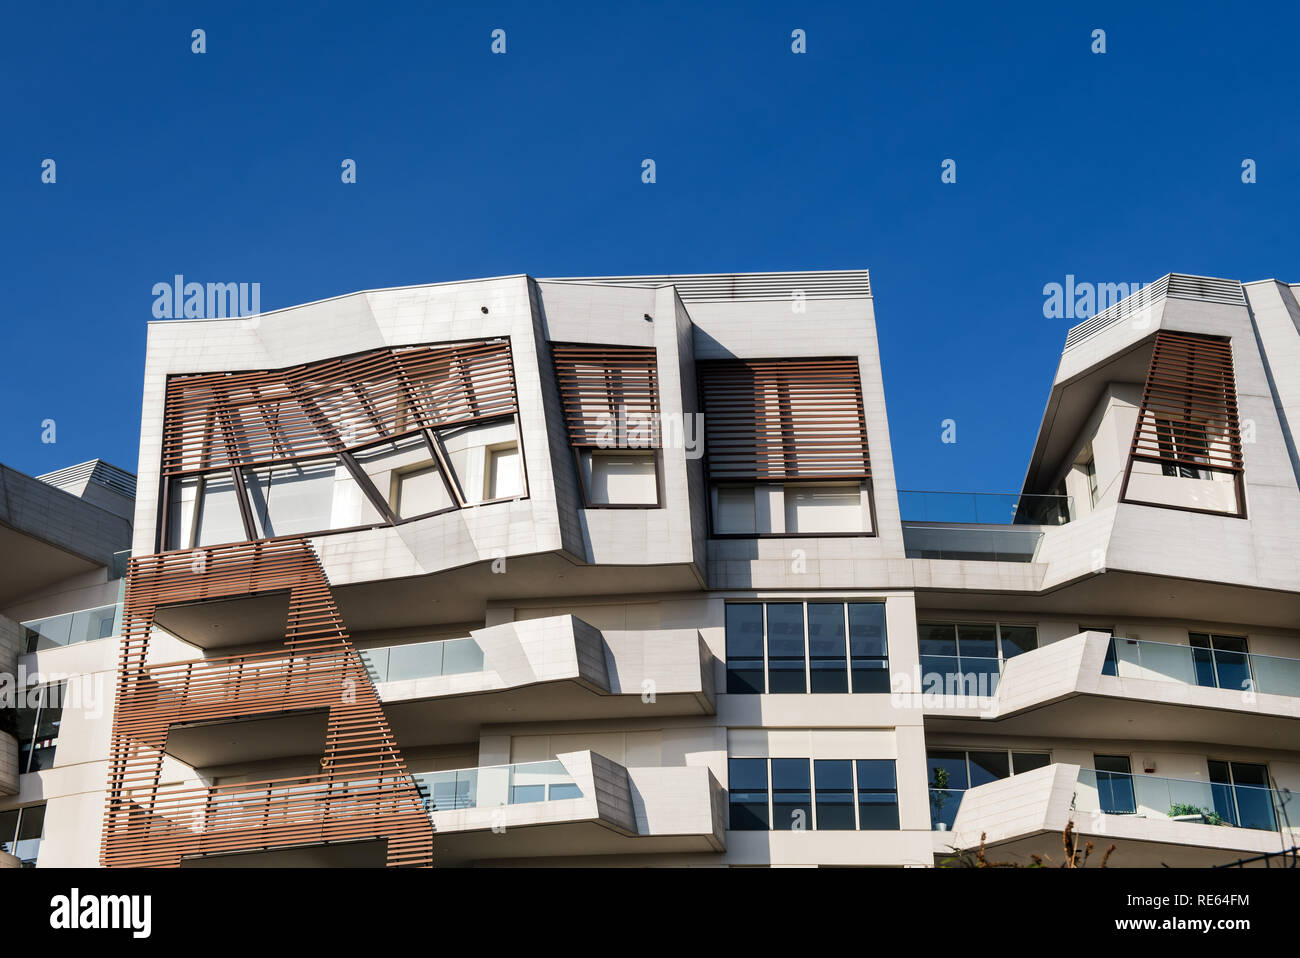 Résidence moderne inhabituelle avec la conception angulaire et bois bardage bois détail sur le mur qui entoure un grand balcon contre un ciel bleu Banque D'Images